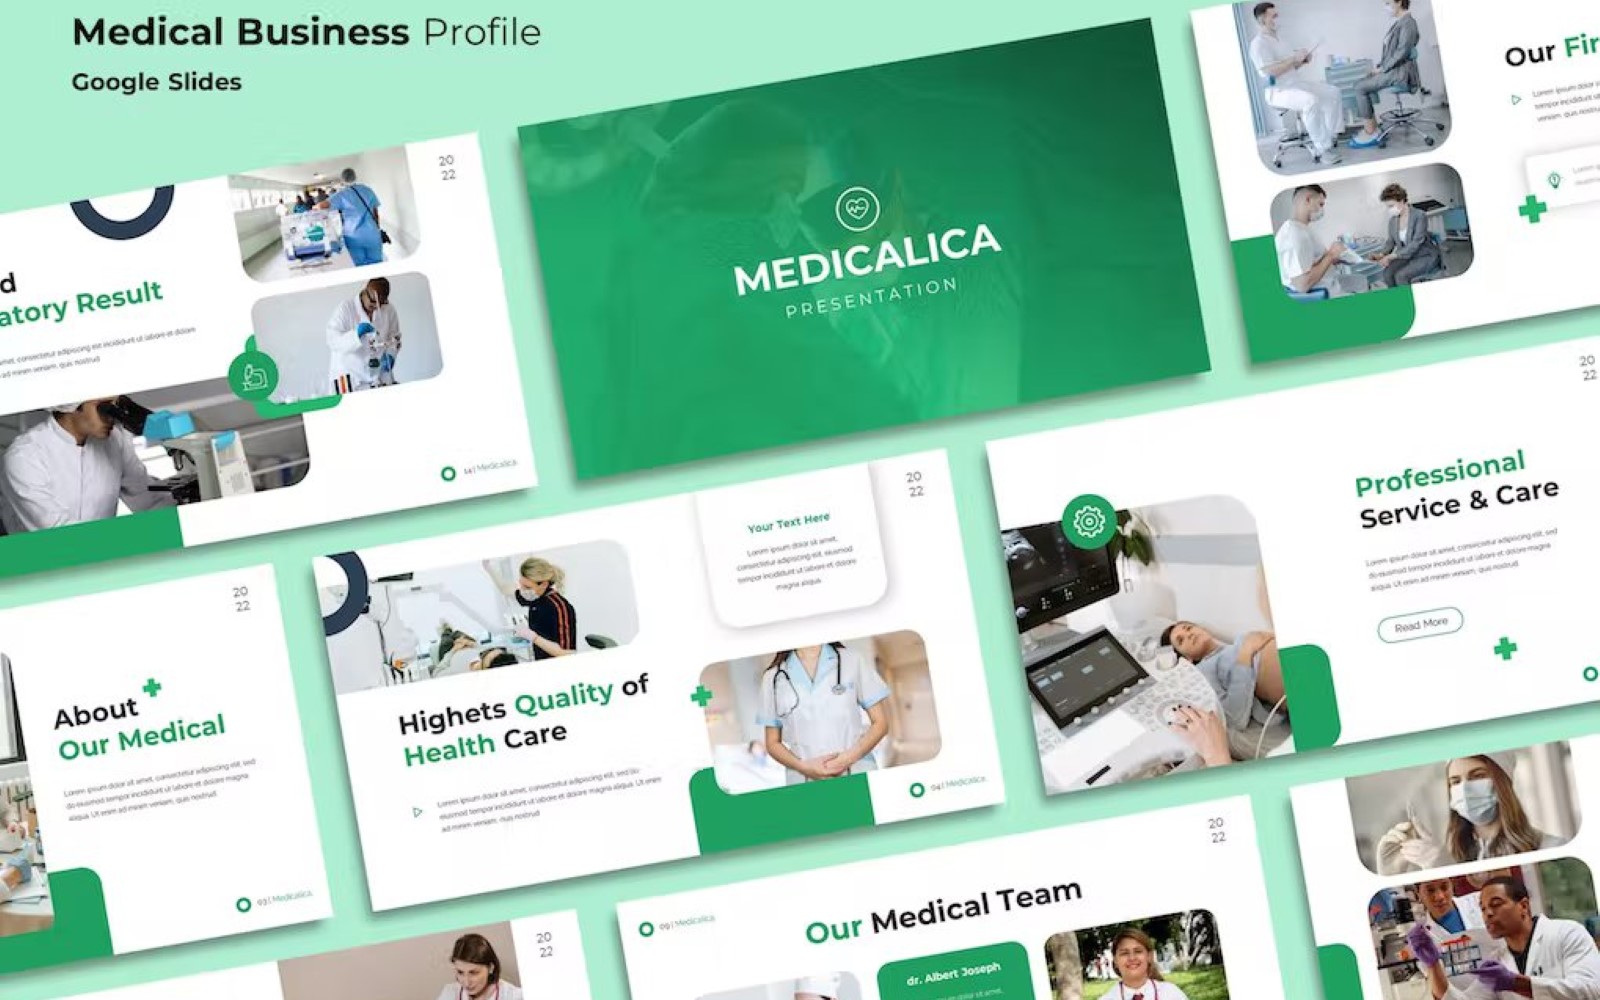 Medical Business Profile Google Slides